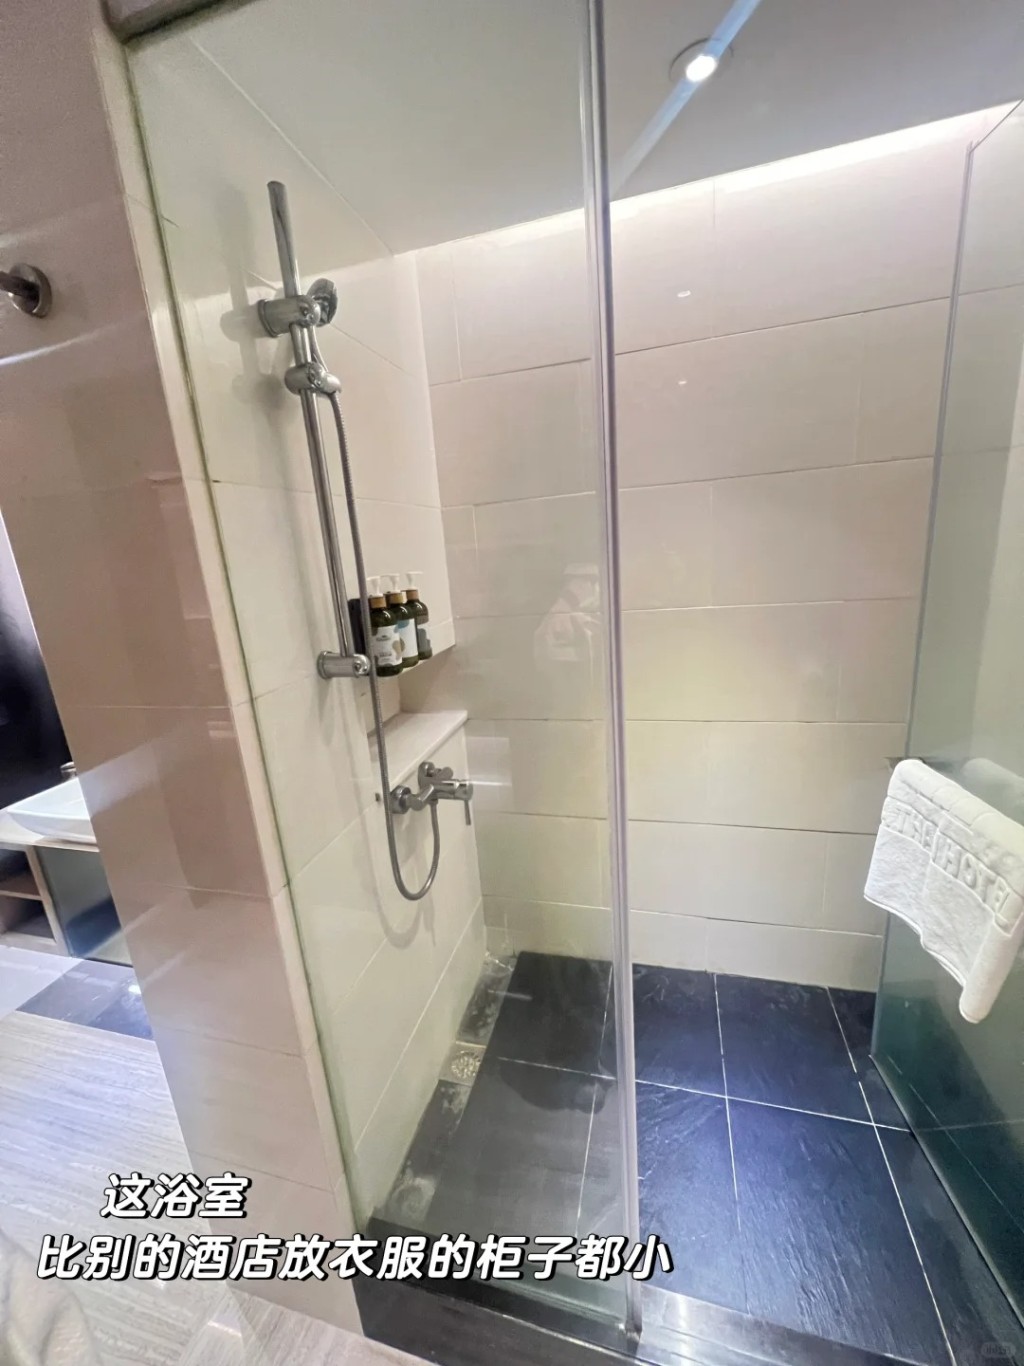 2.洗手间的马桶正于淋浴间旁边，而且浴室空间细小